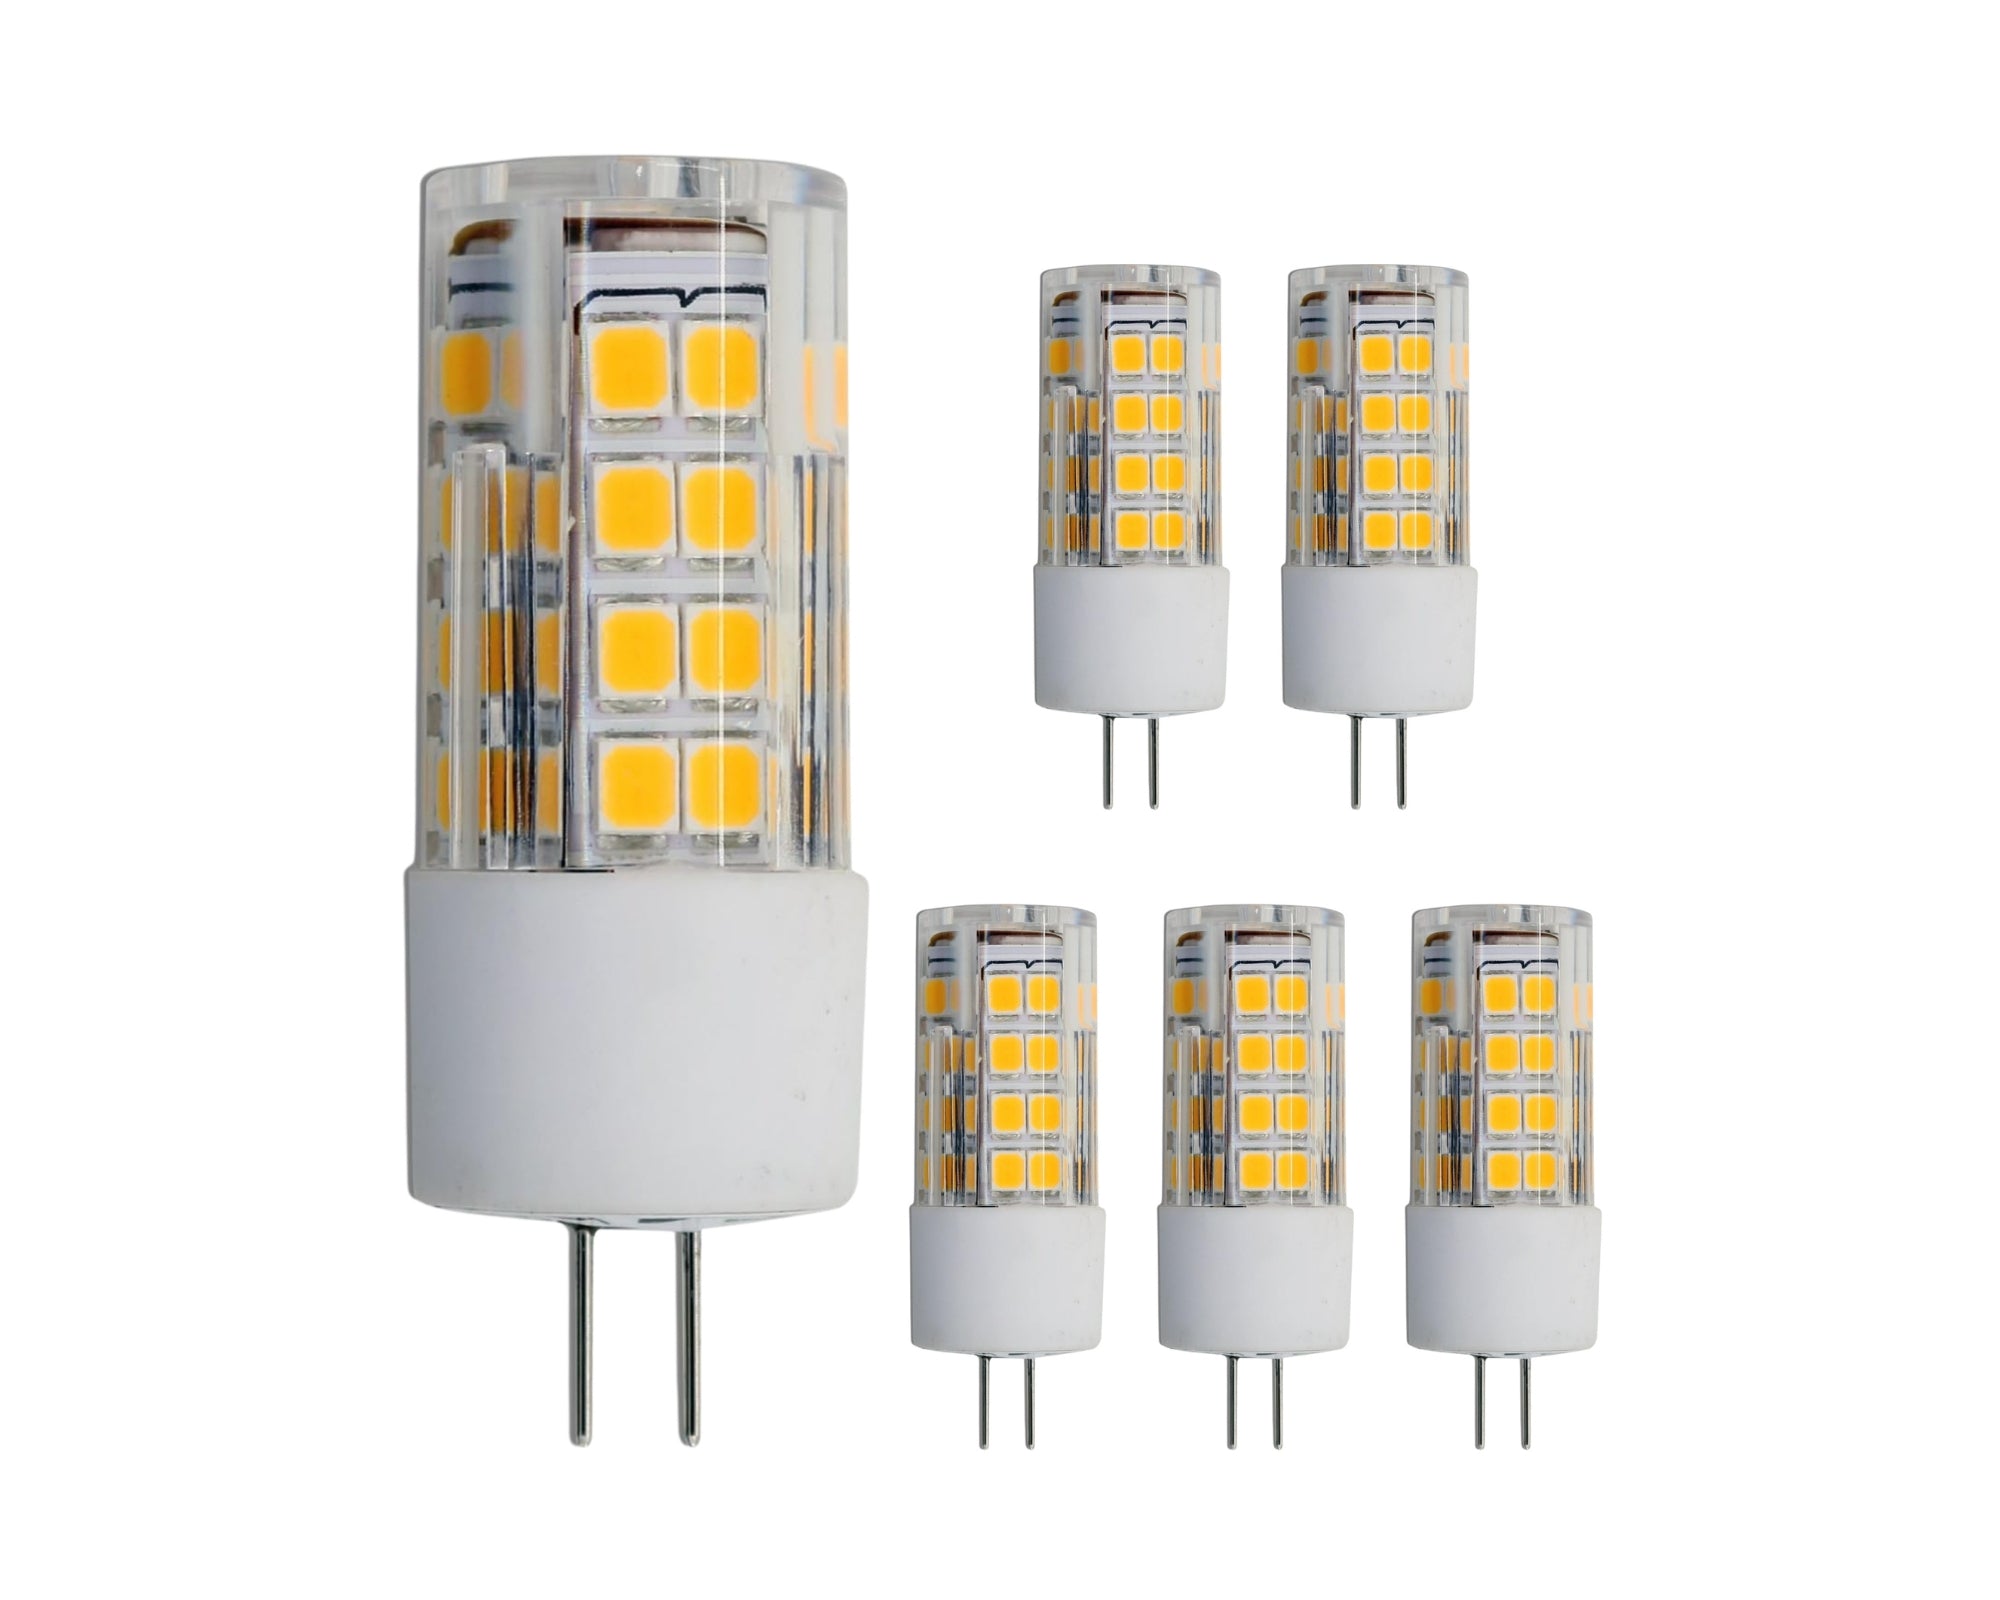 Lumina Lighting® G4 4W LED Bulb | 4W Bi-Pin Landscape LED Light | 12V 3000K Warm White, 380 Lumens | (6-Pack)